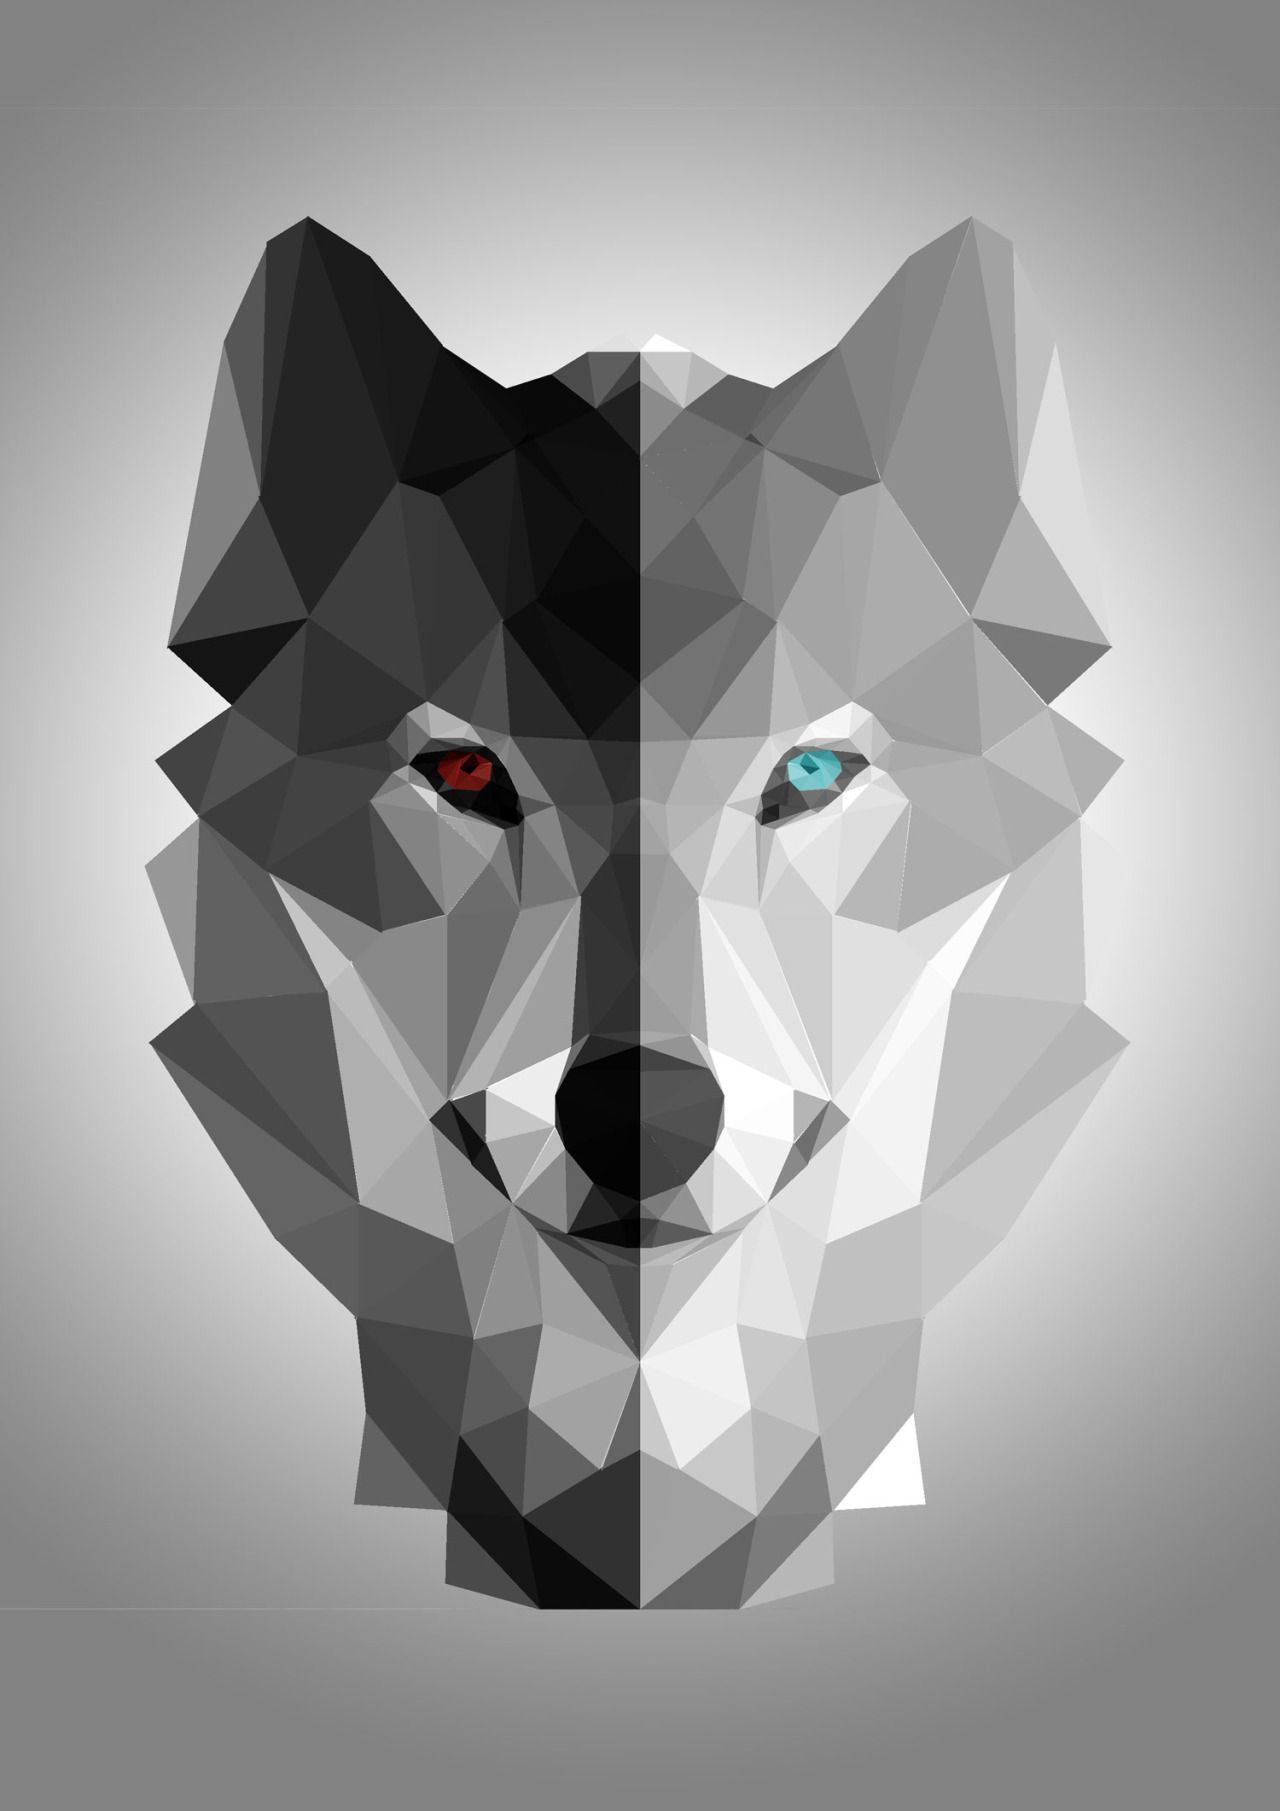 هندسی گرگ (Wolf Geometric)